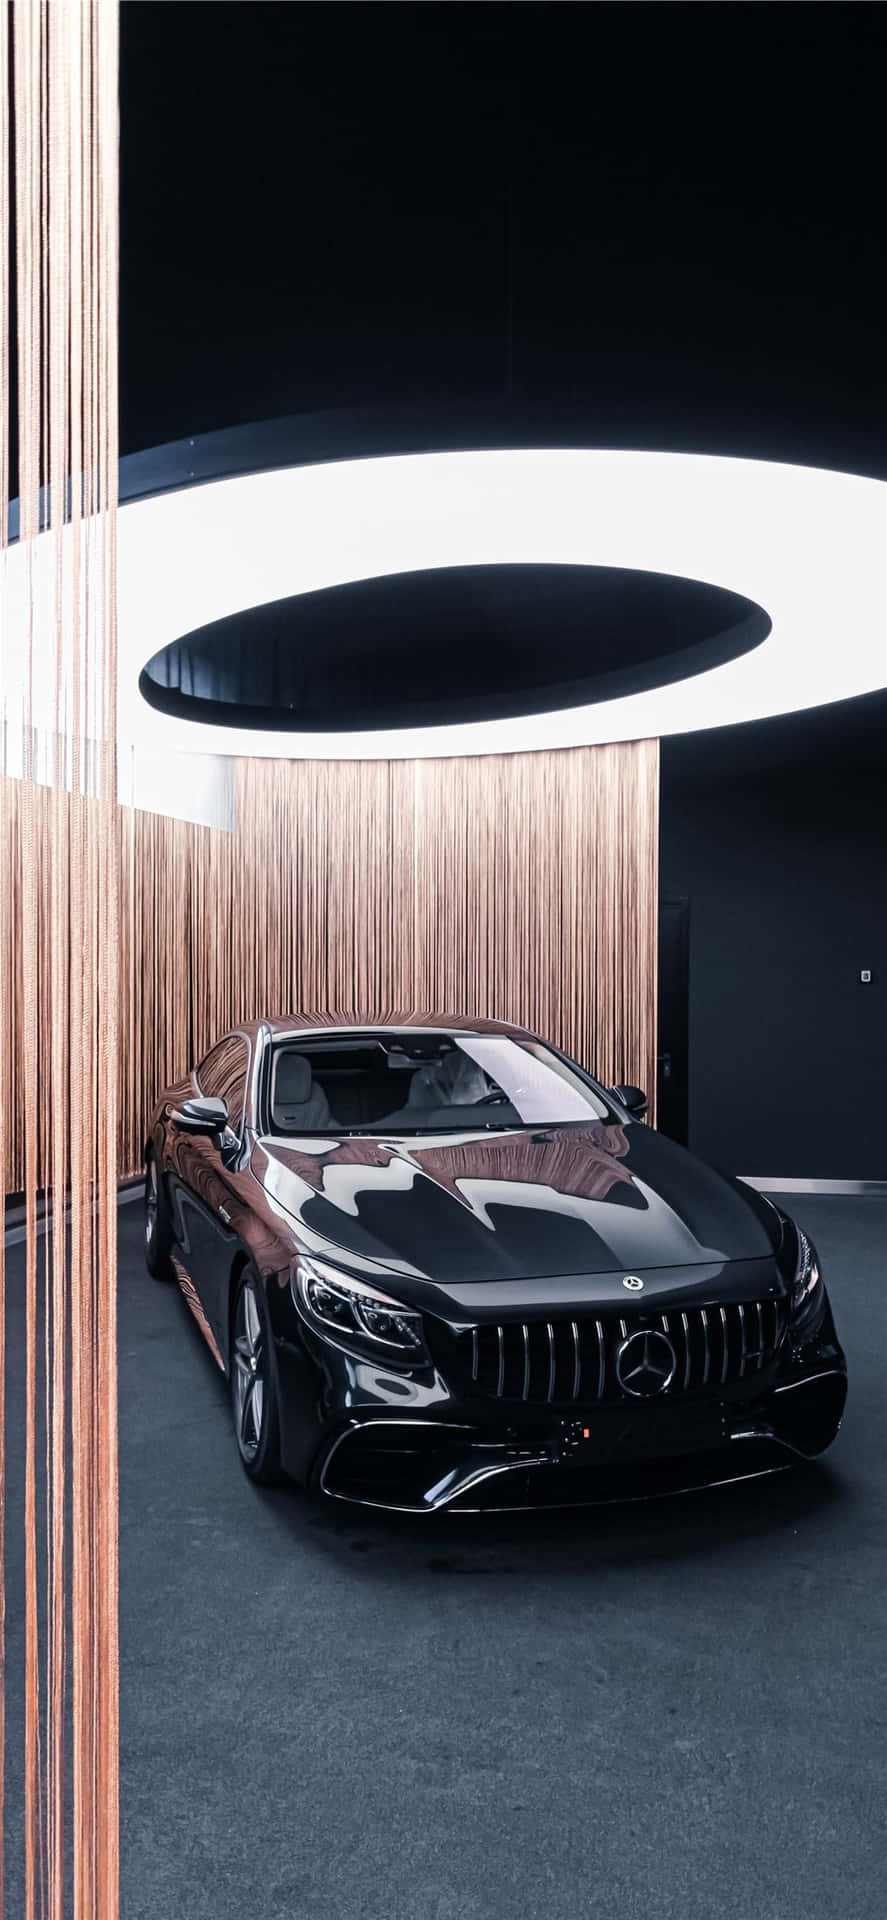 Blackiphone Xs Mercedes Amg Hintergrund Im Showroom Anzeigen.